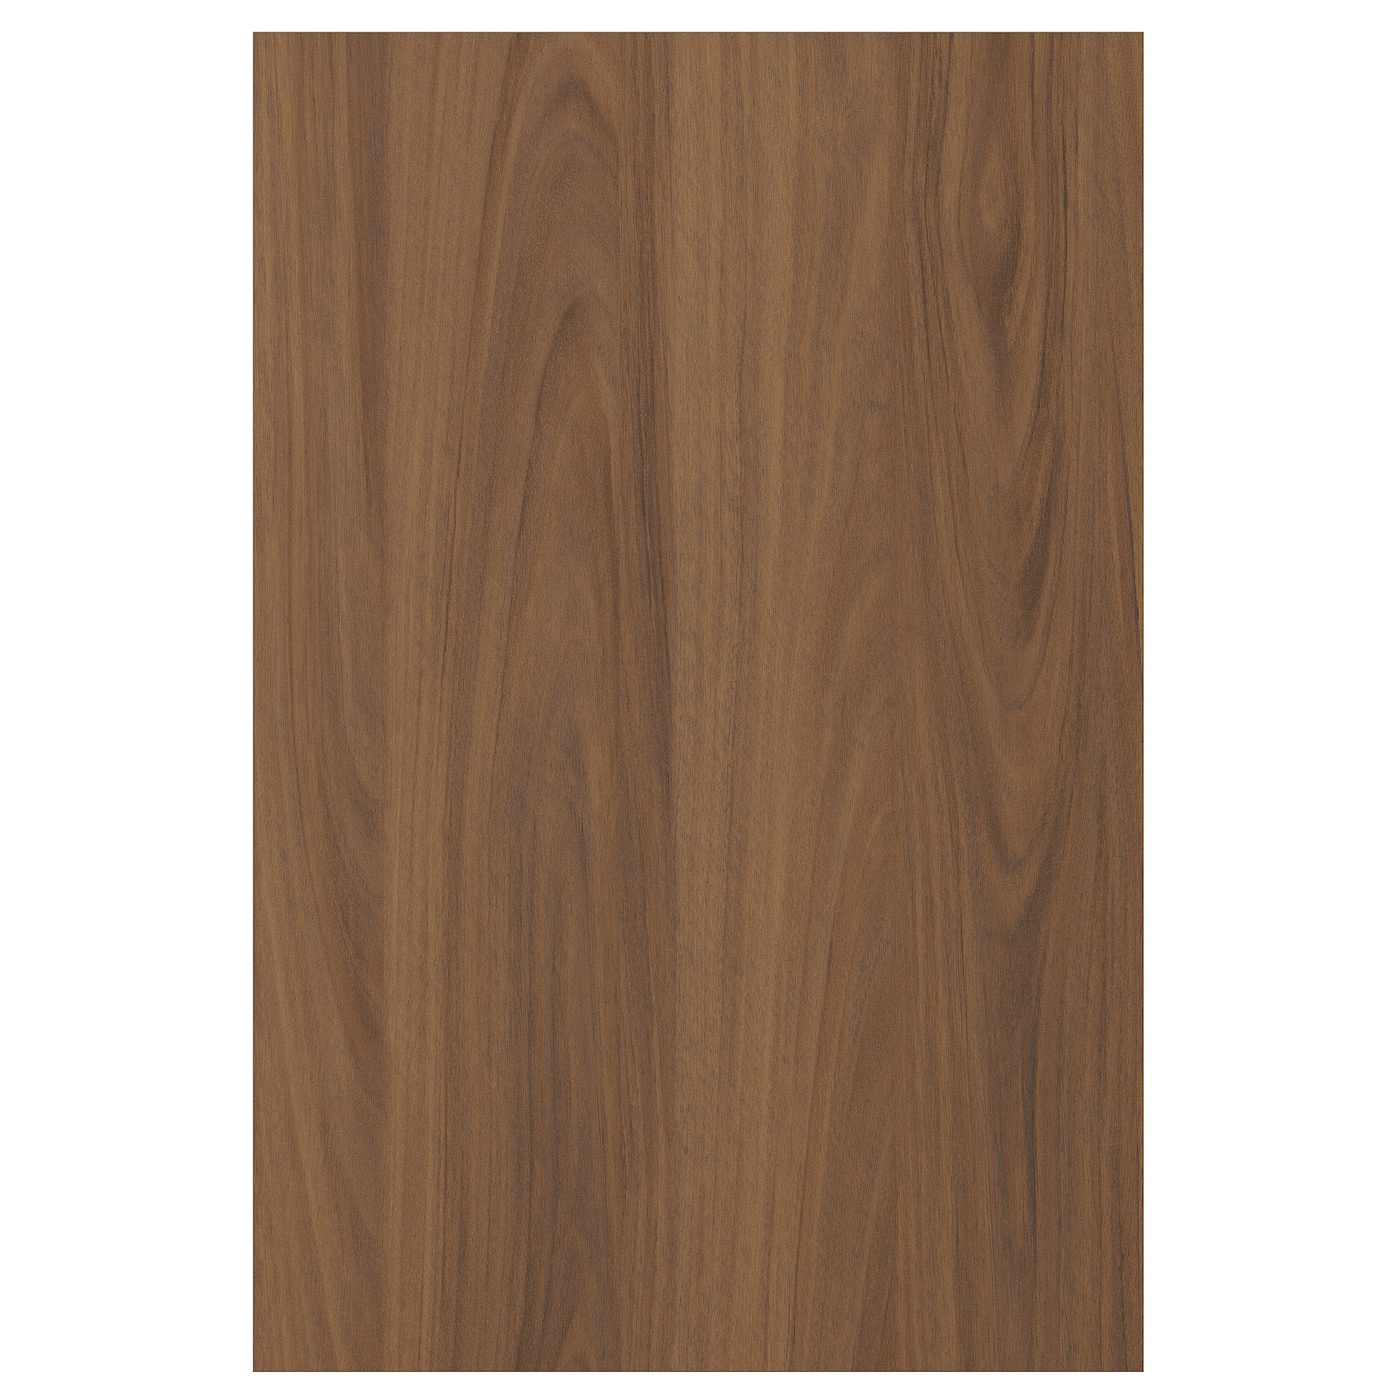 Дверца  - TISTORP IKEA/ ТИСТОРП ИКЕА,  60х40 см, коричневый